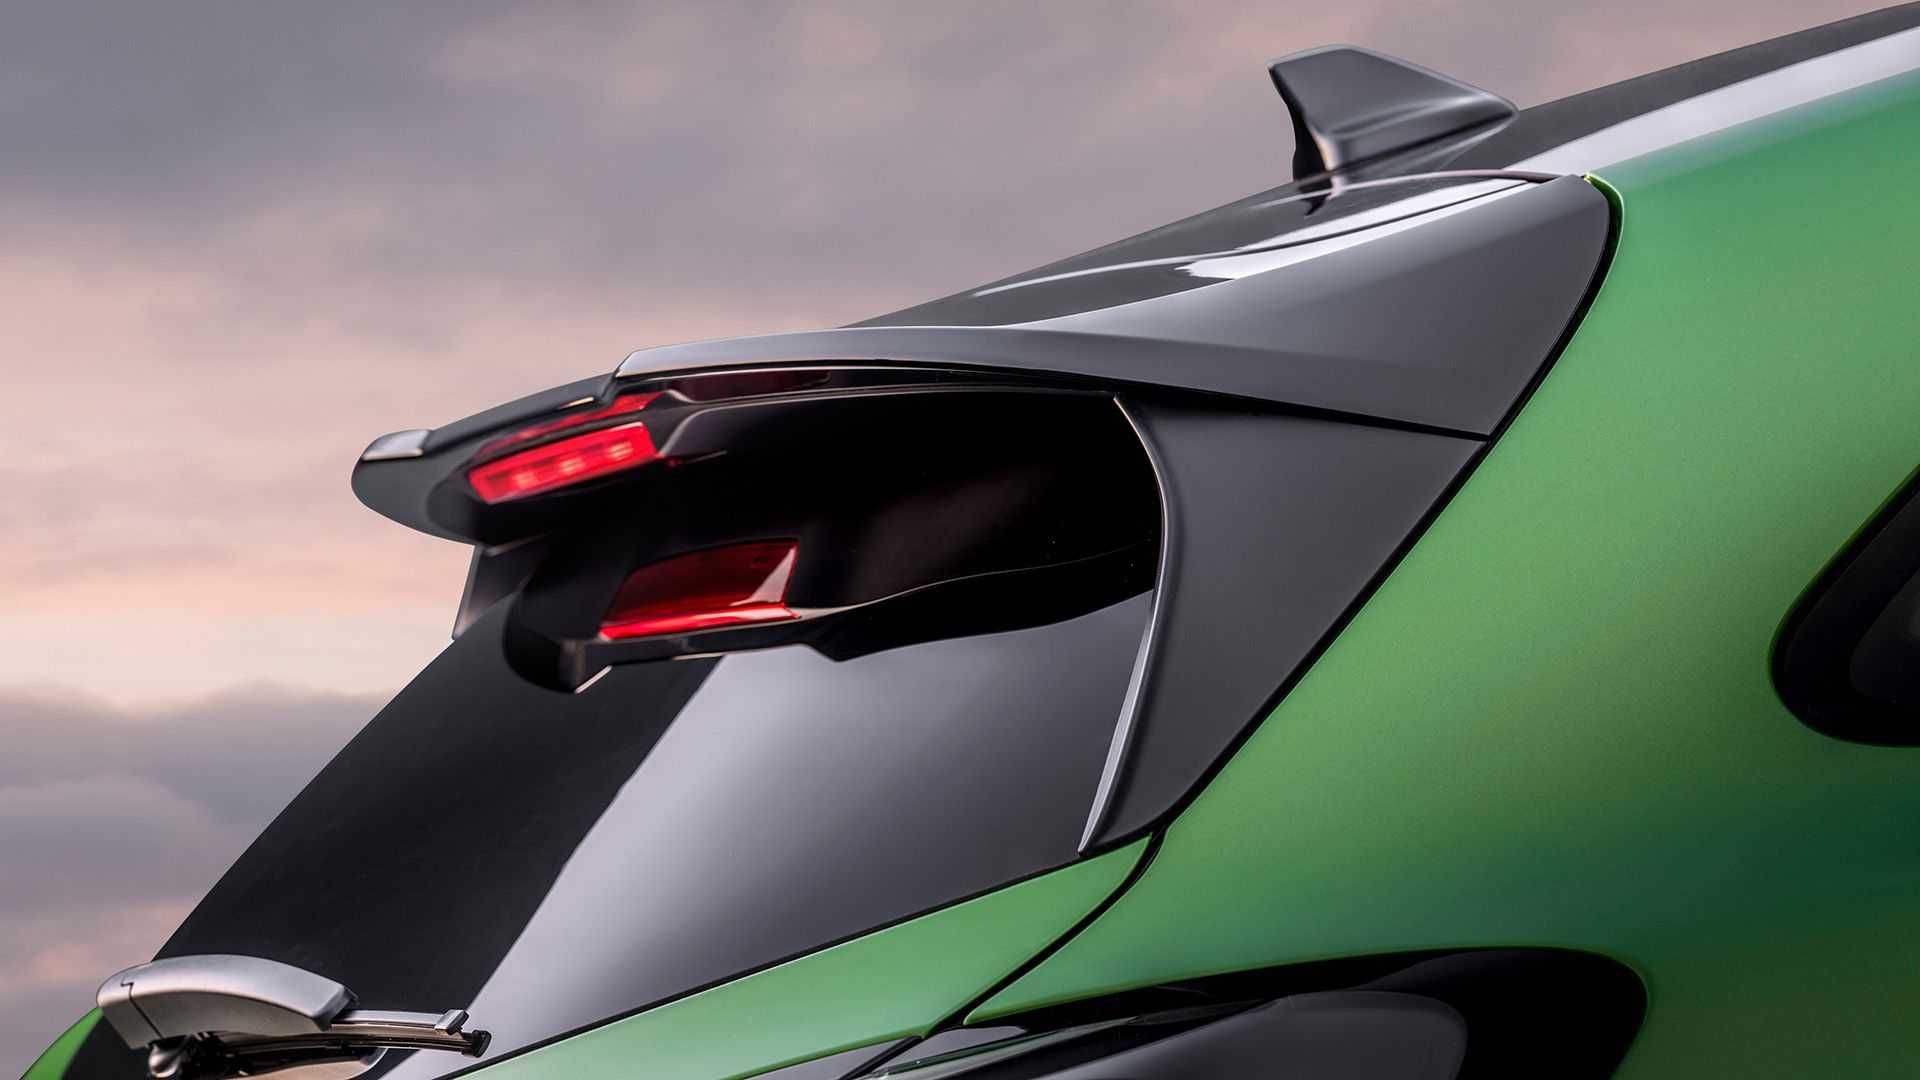 نمای اسپویلر سقفی عقب کراس اور فورد پوما اس تی / 2021 Ford Puma ST سبز رنگ